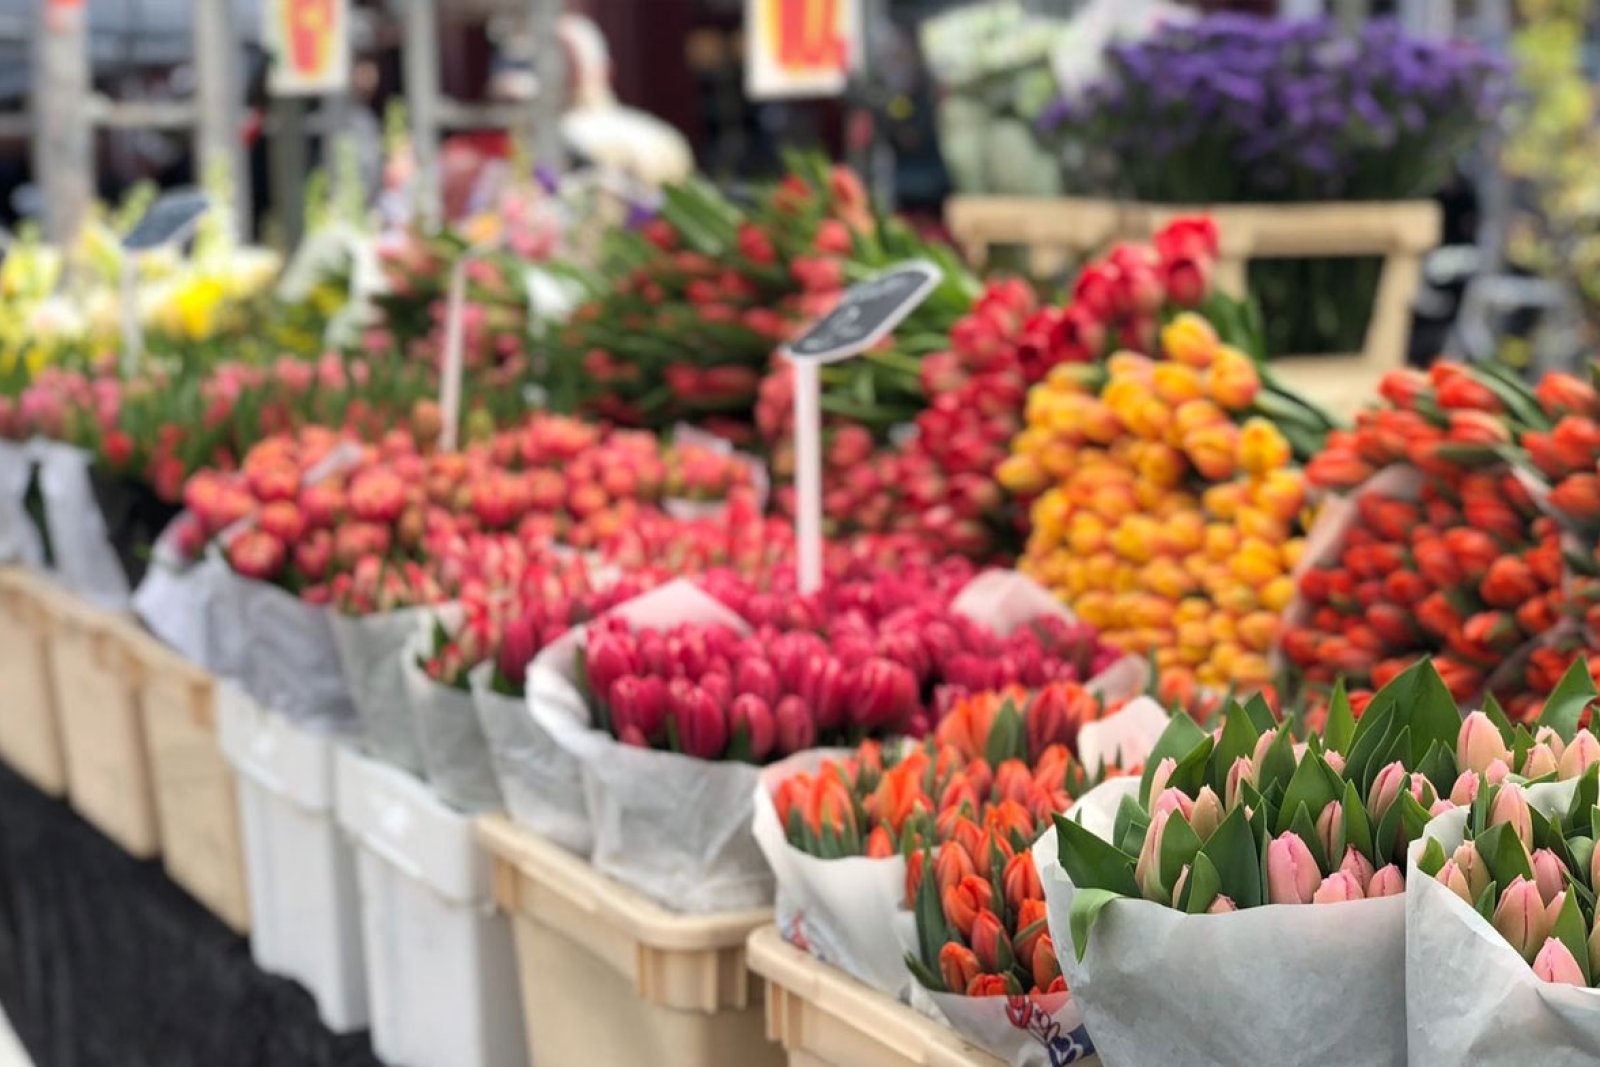 Bloemenmarkt aan de Singel Amsterdam